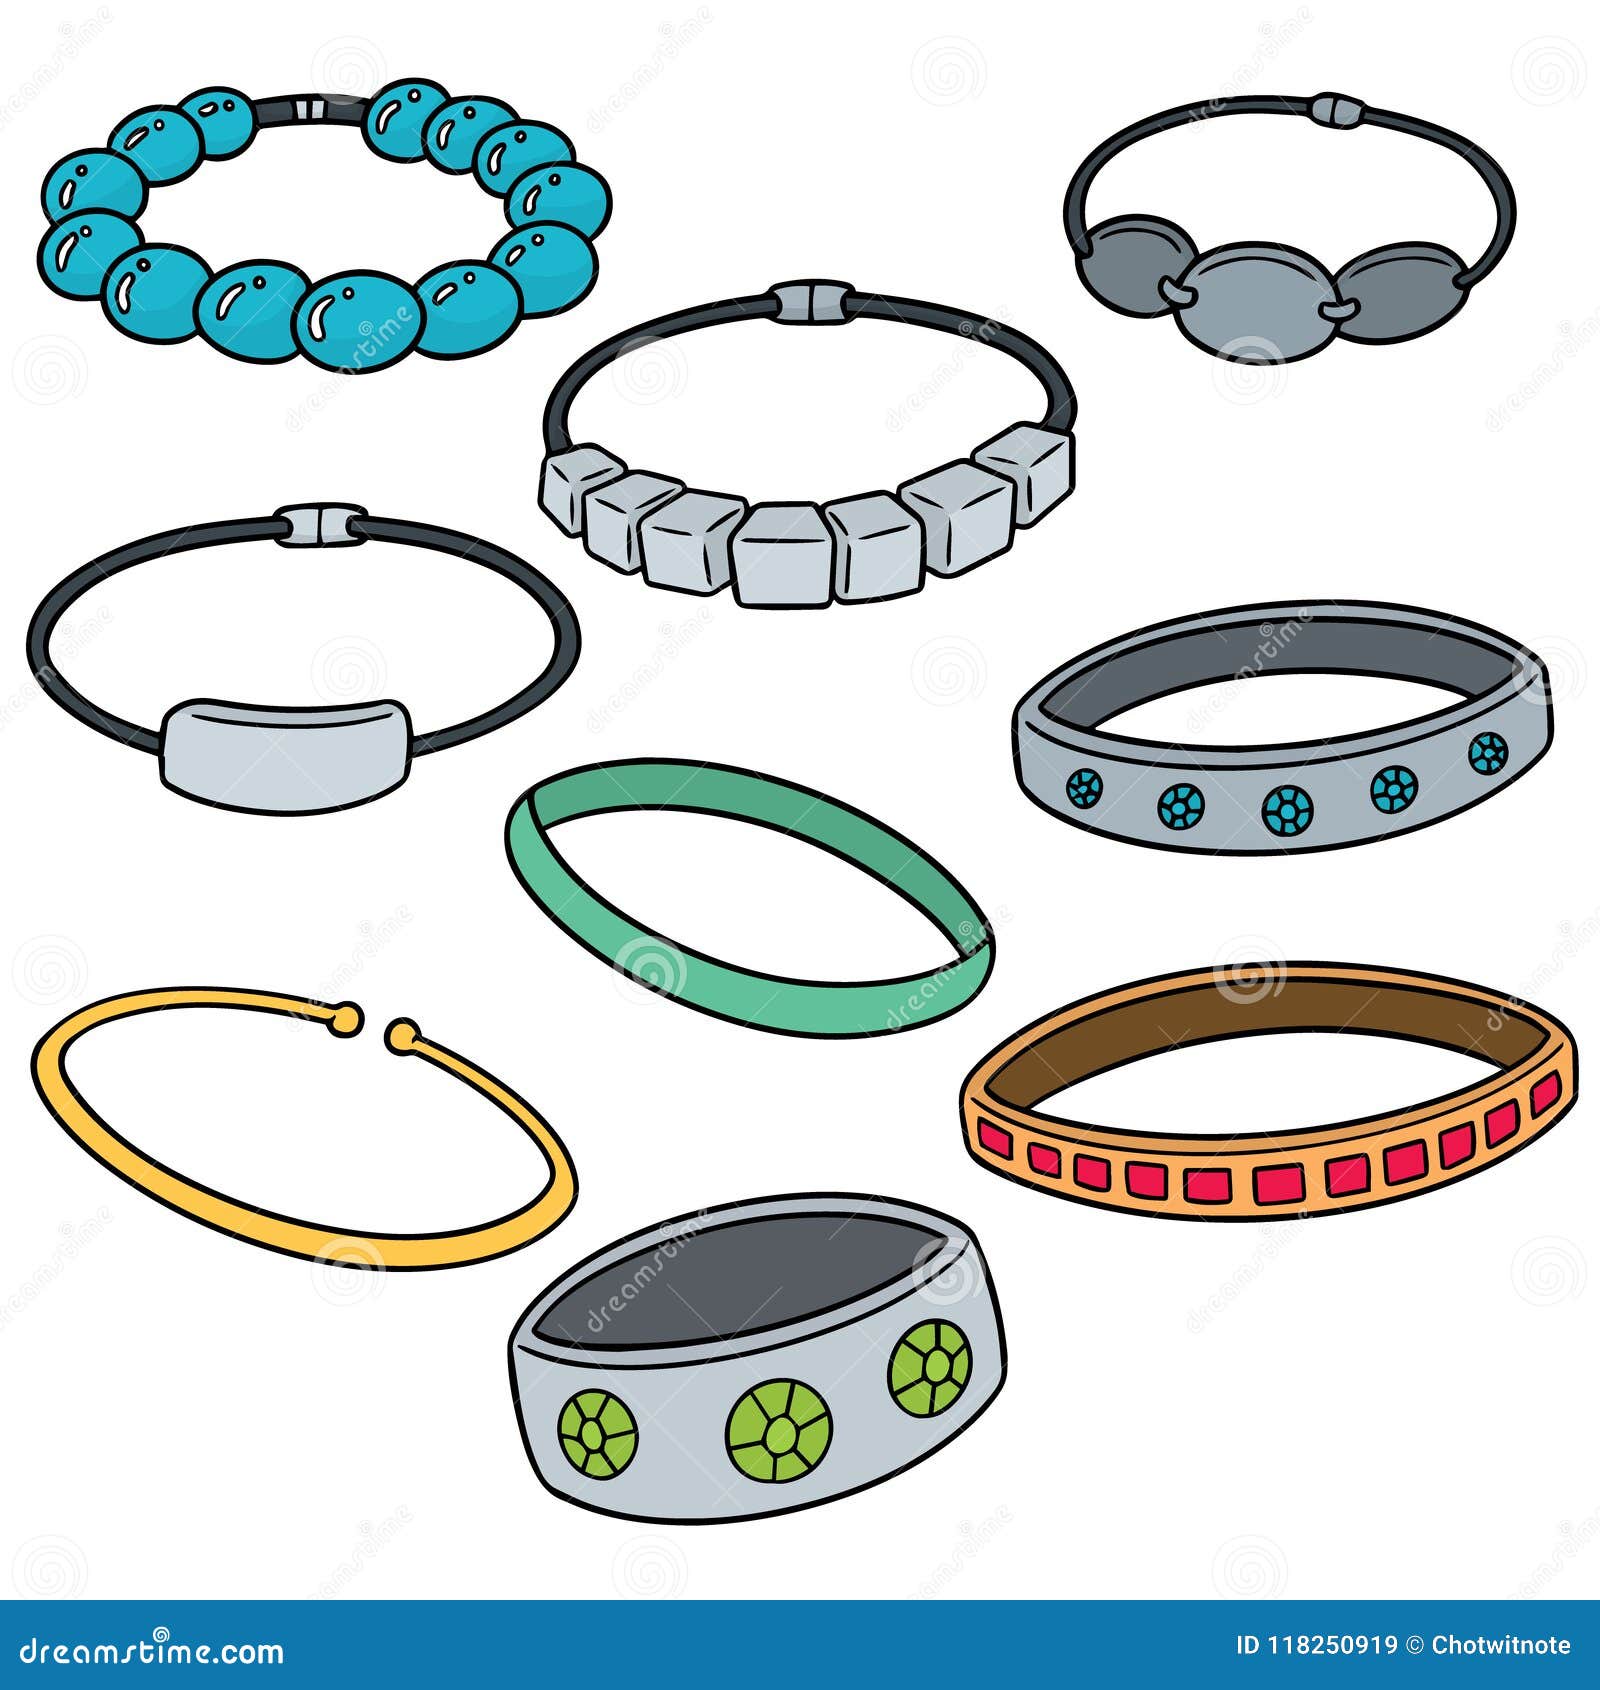  set of bracelet